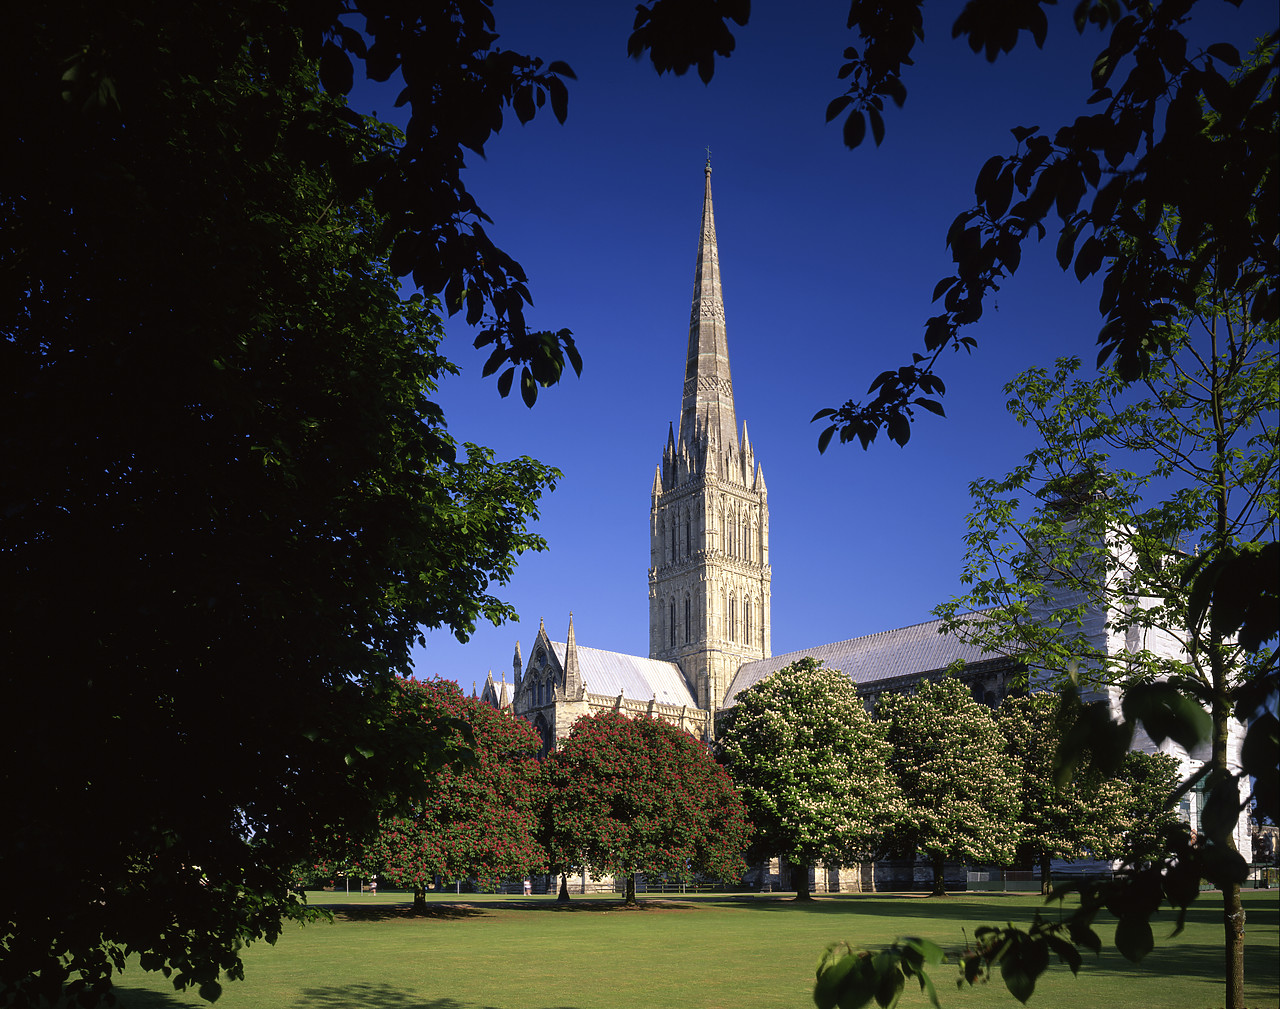 #980707-1 - Salisbury Cathedral, Wiltshire, England